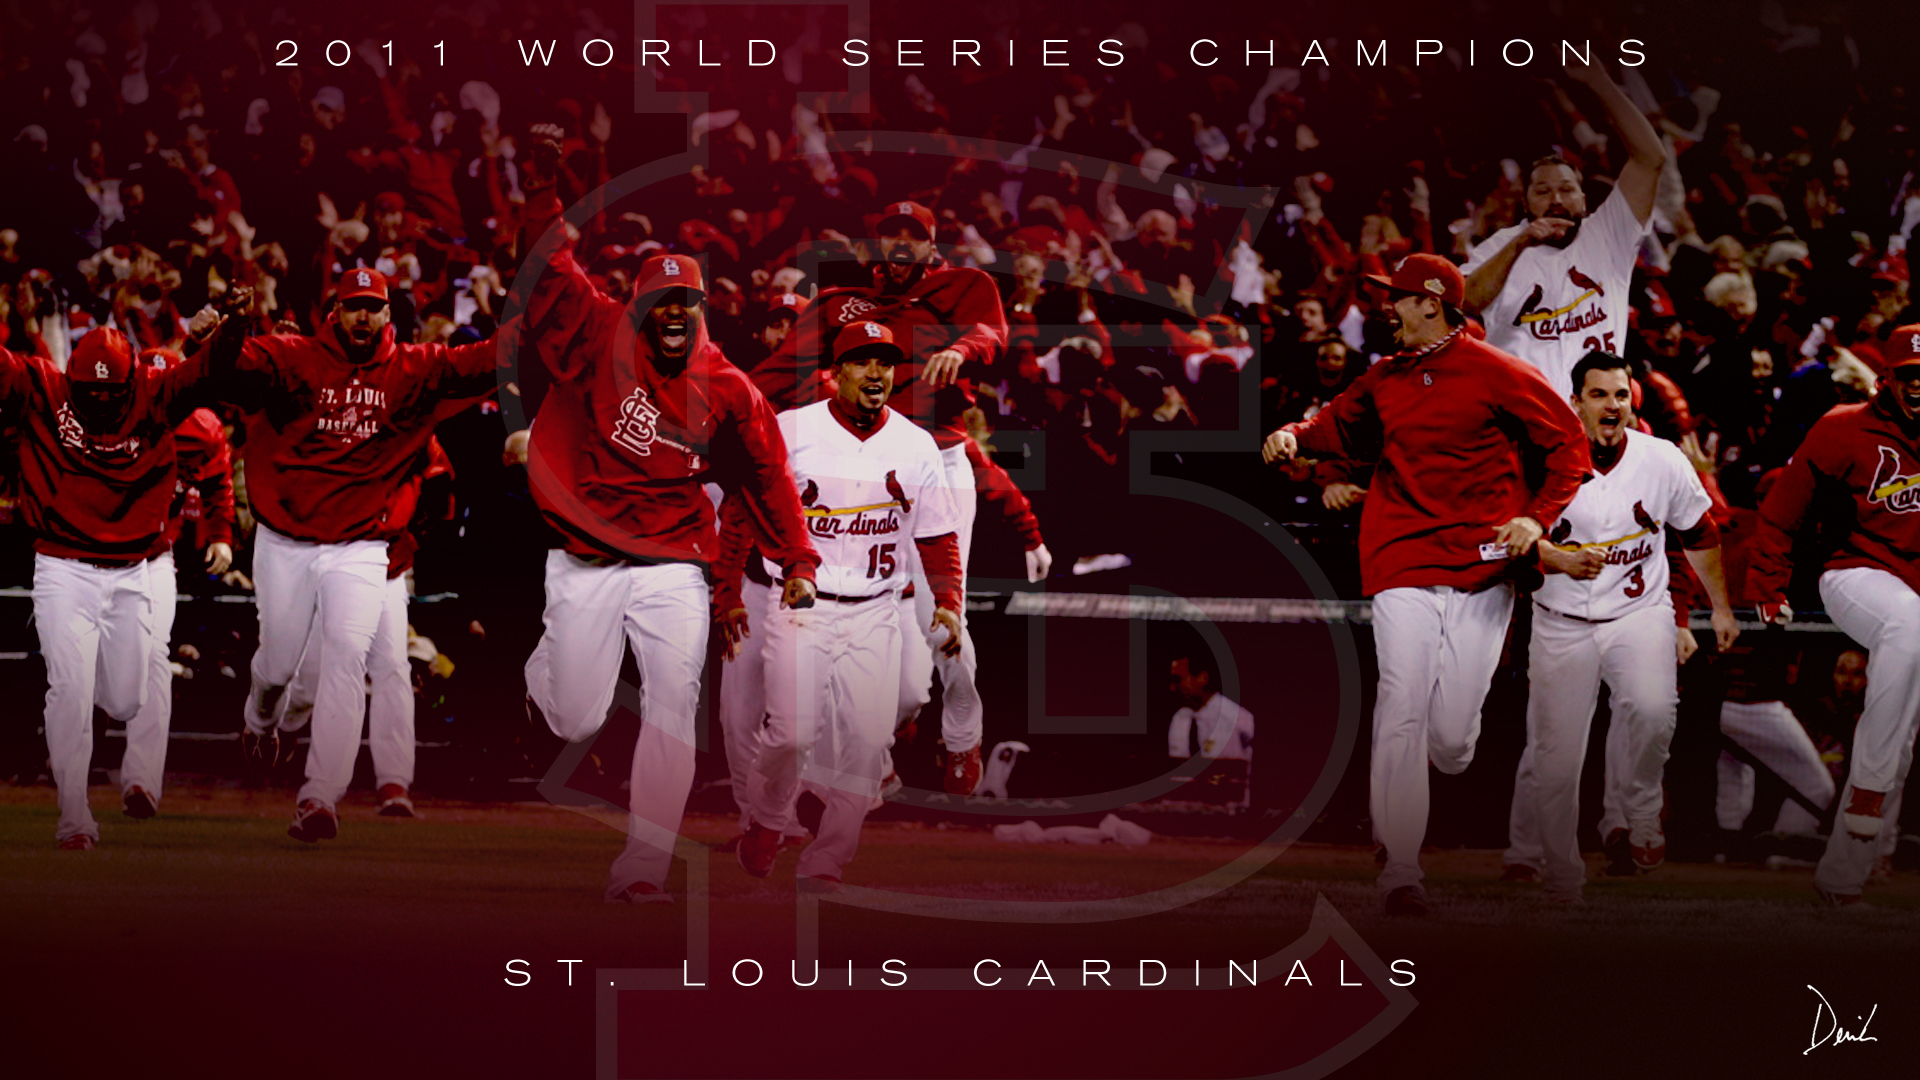 St. Louis Cardinals wallpaper - Sport wallpapers - #34124